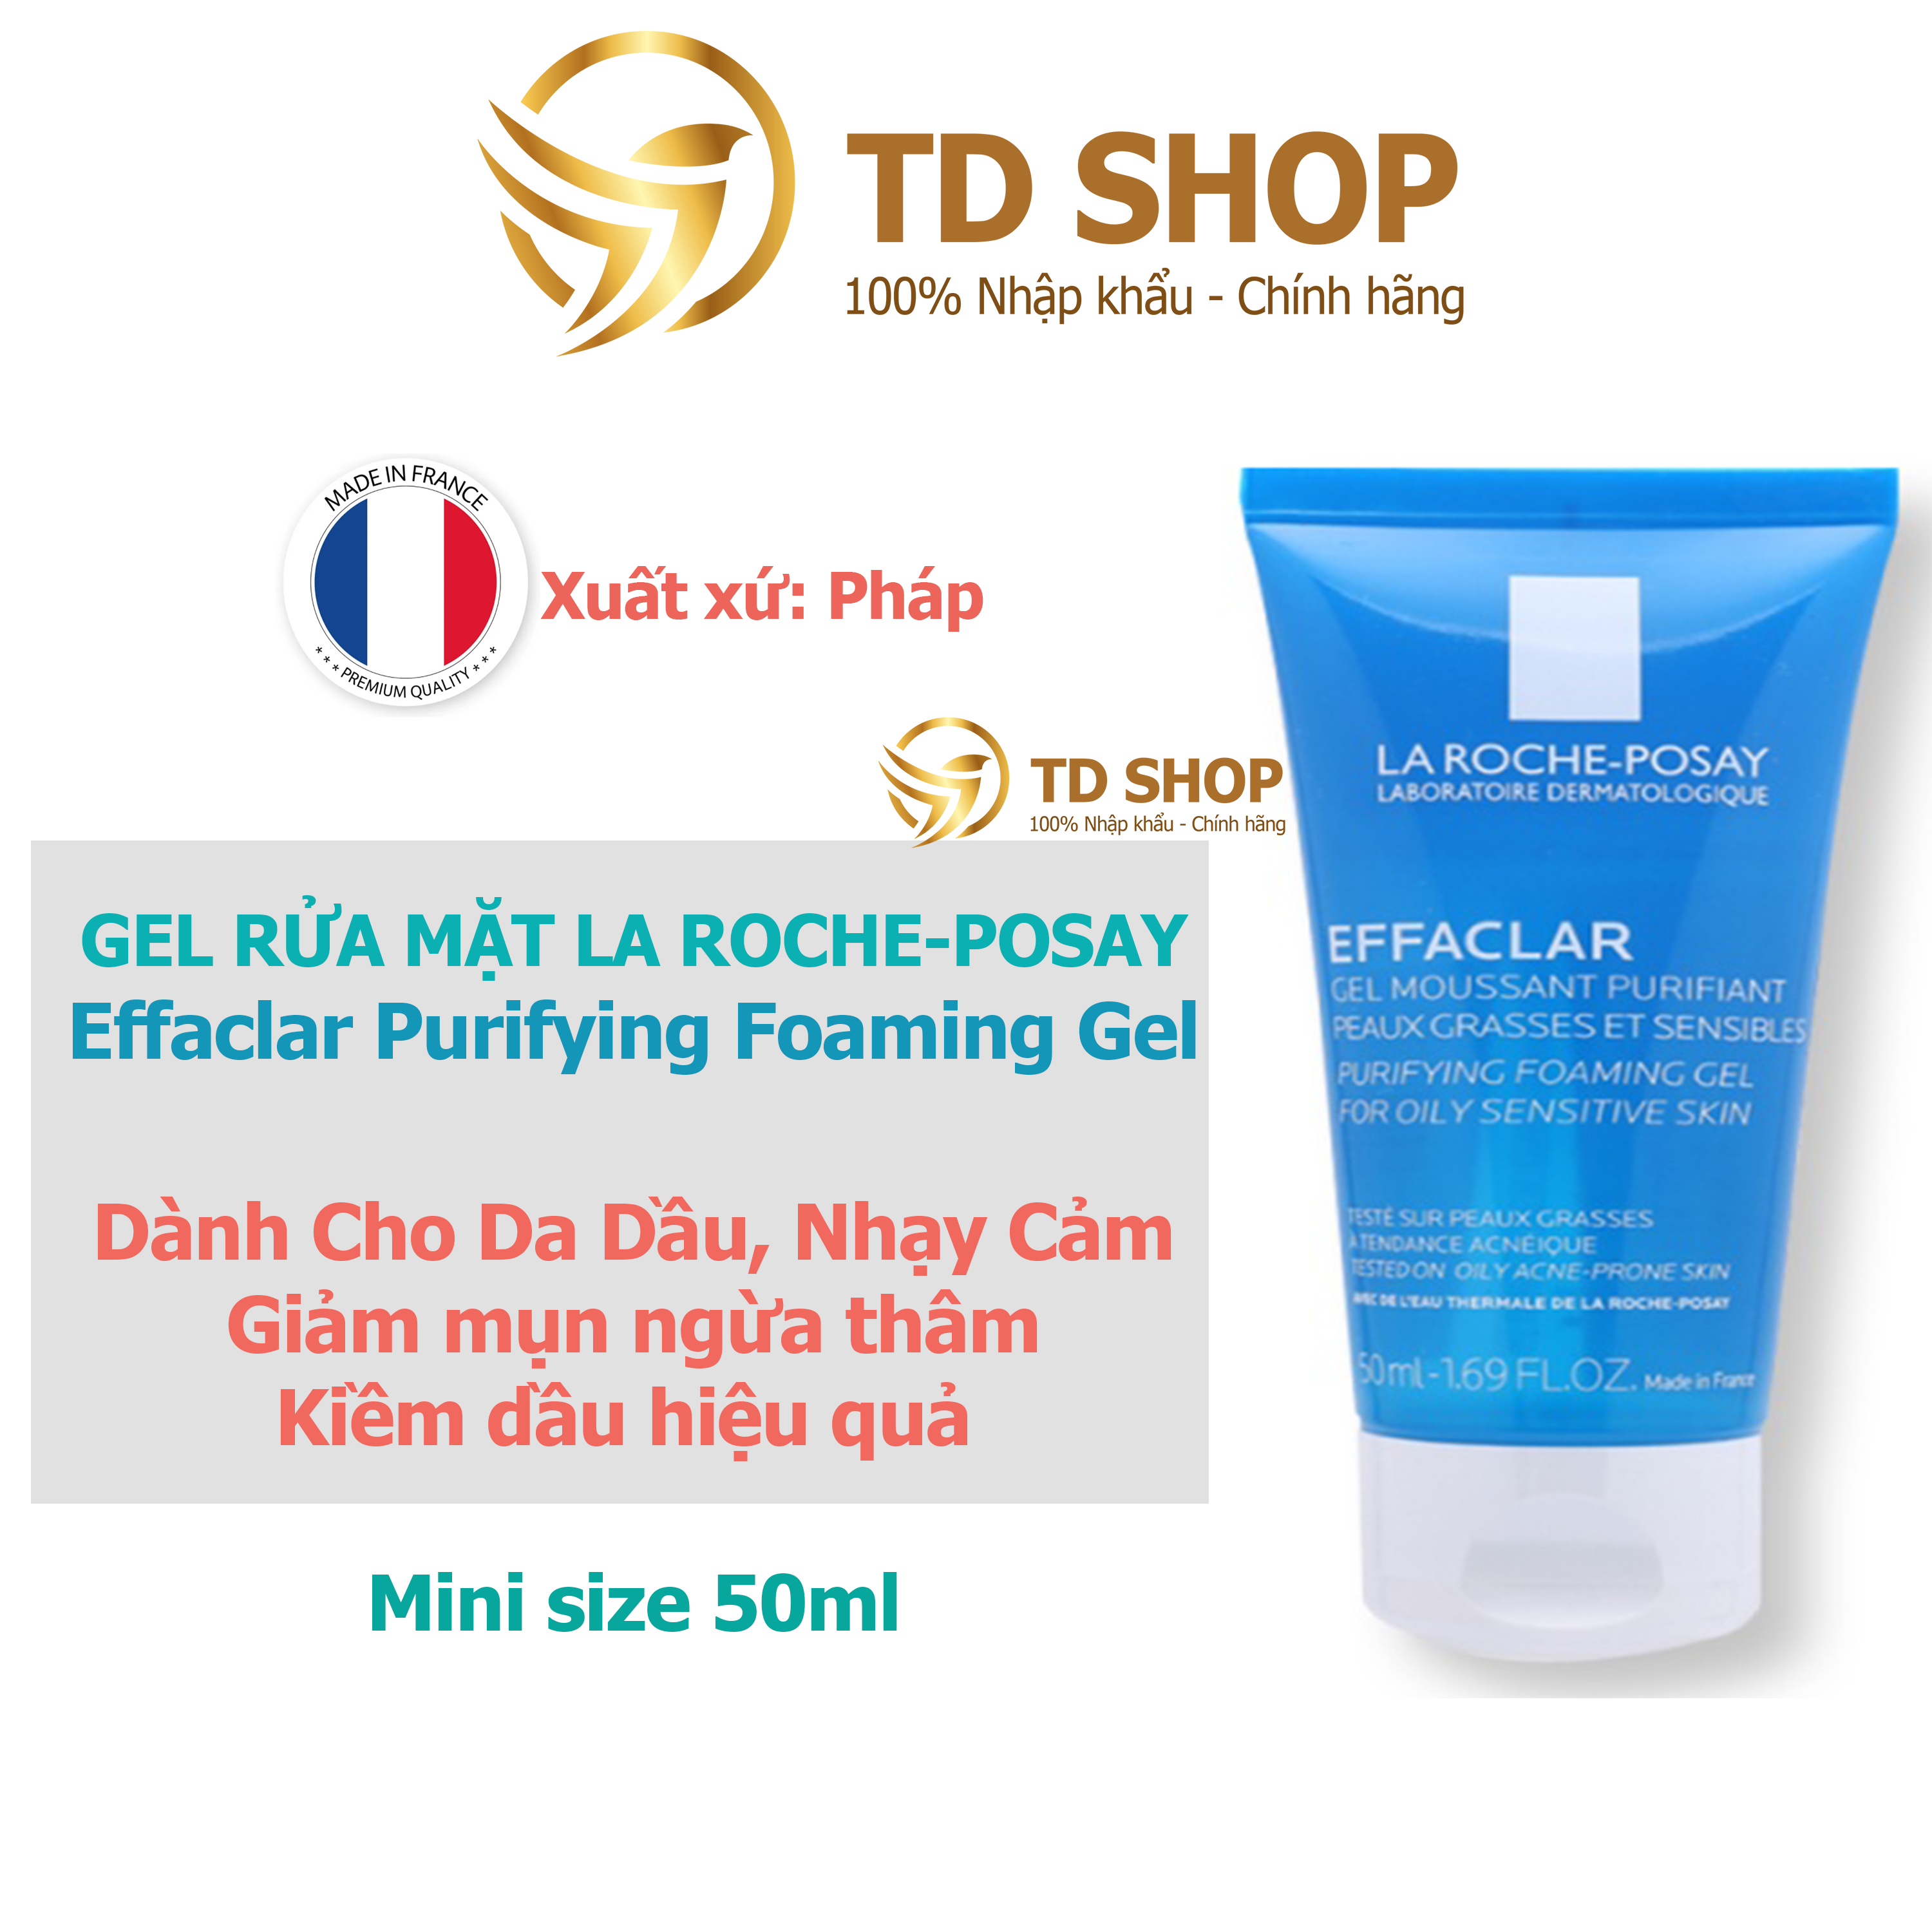 [Chính hãng] Gel Rửa Mặt Tạo Bọt Làm Sạch Dành Cho Da Dầu Nhạy Cảm La Roche Posay Effaclar 50ml - TD Shop